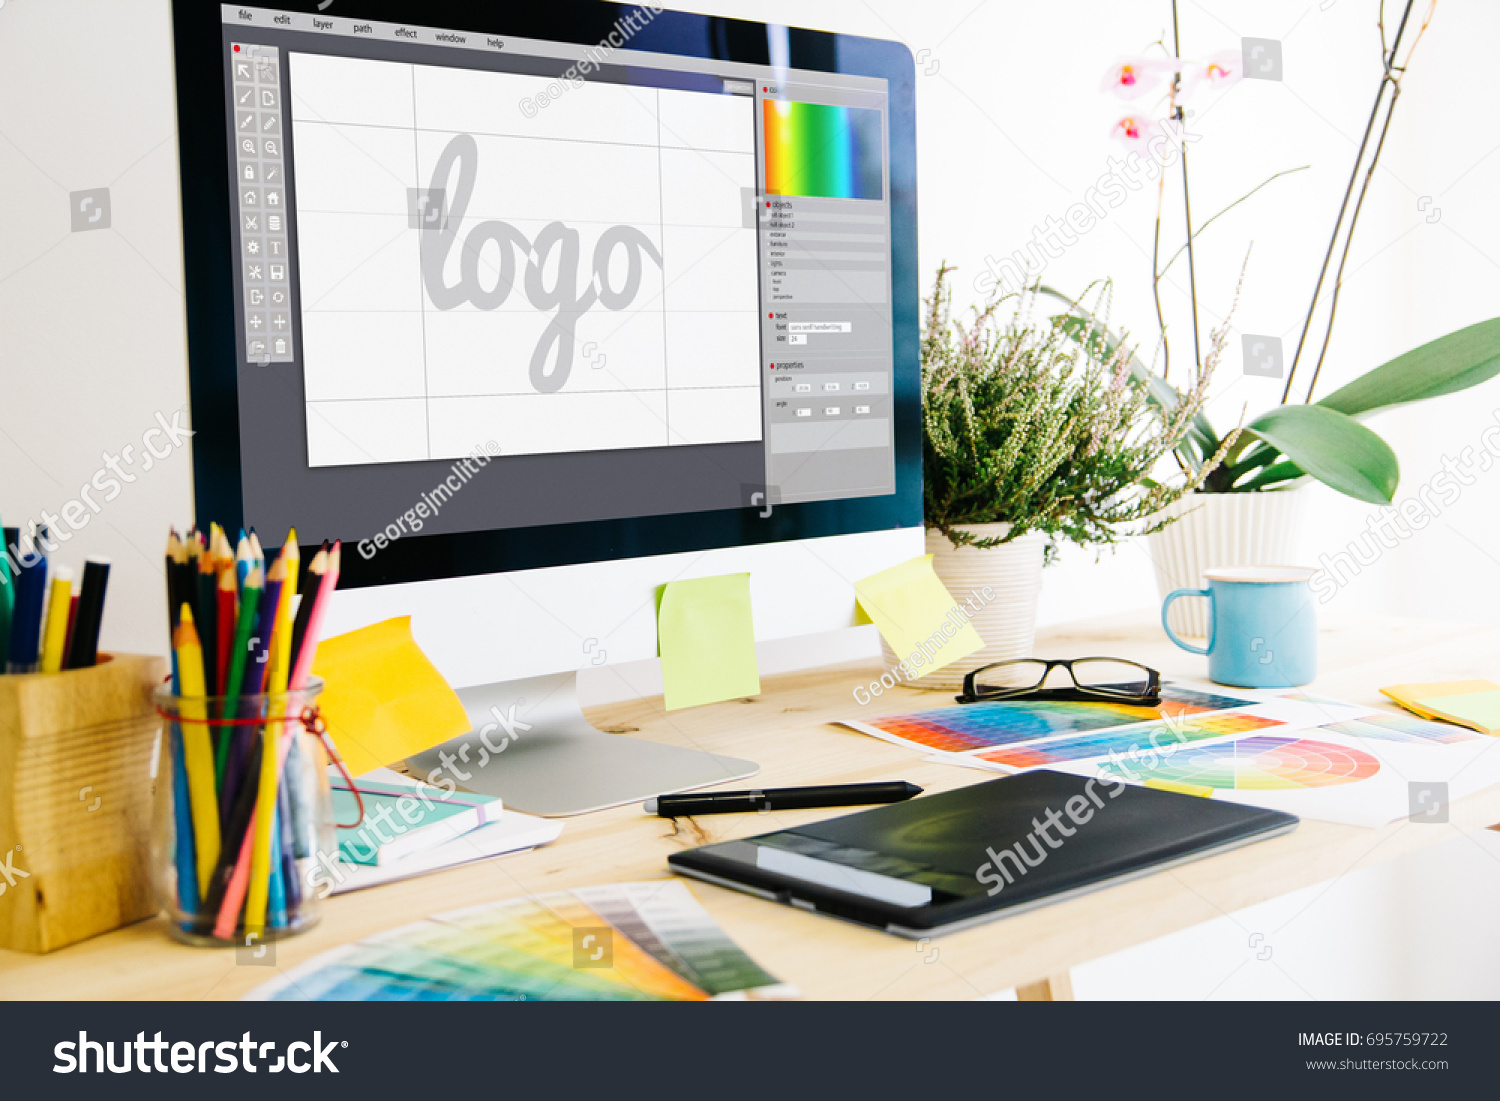 Graphic design studio logo #695759722